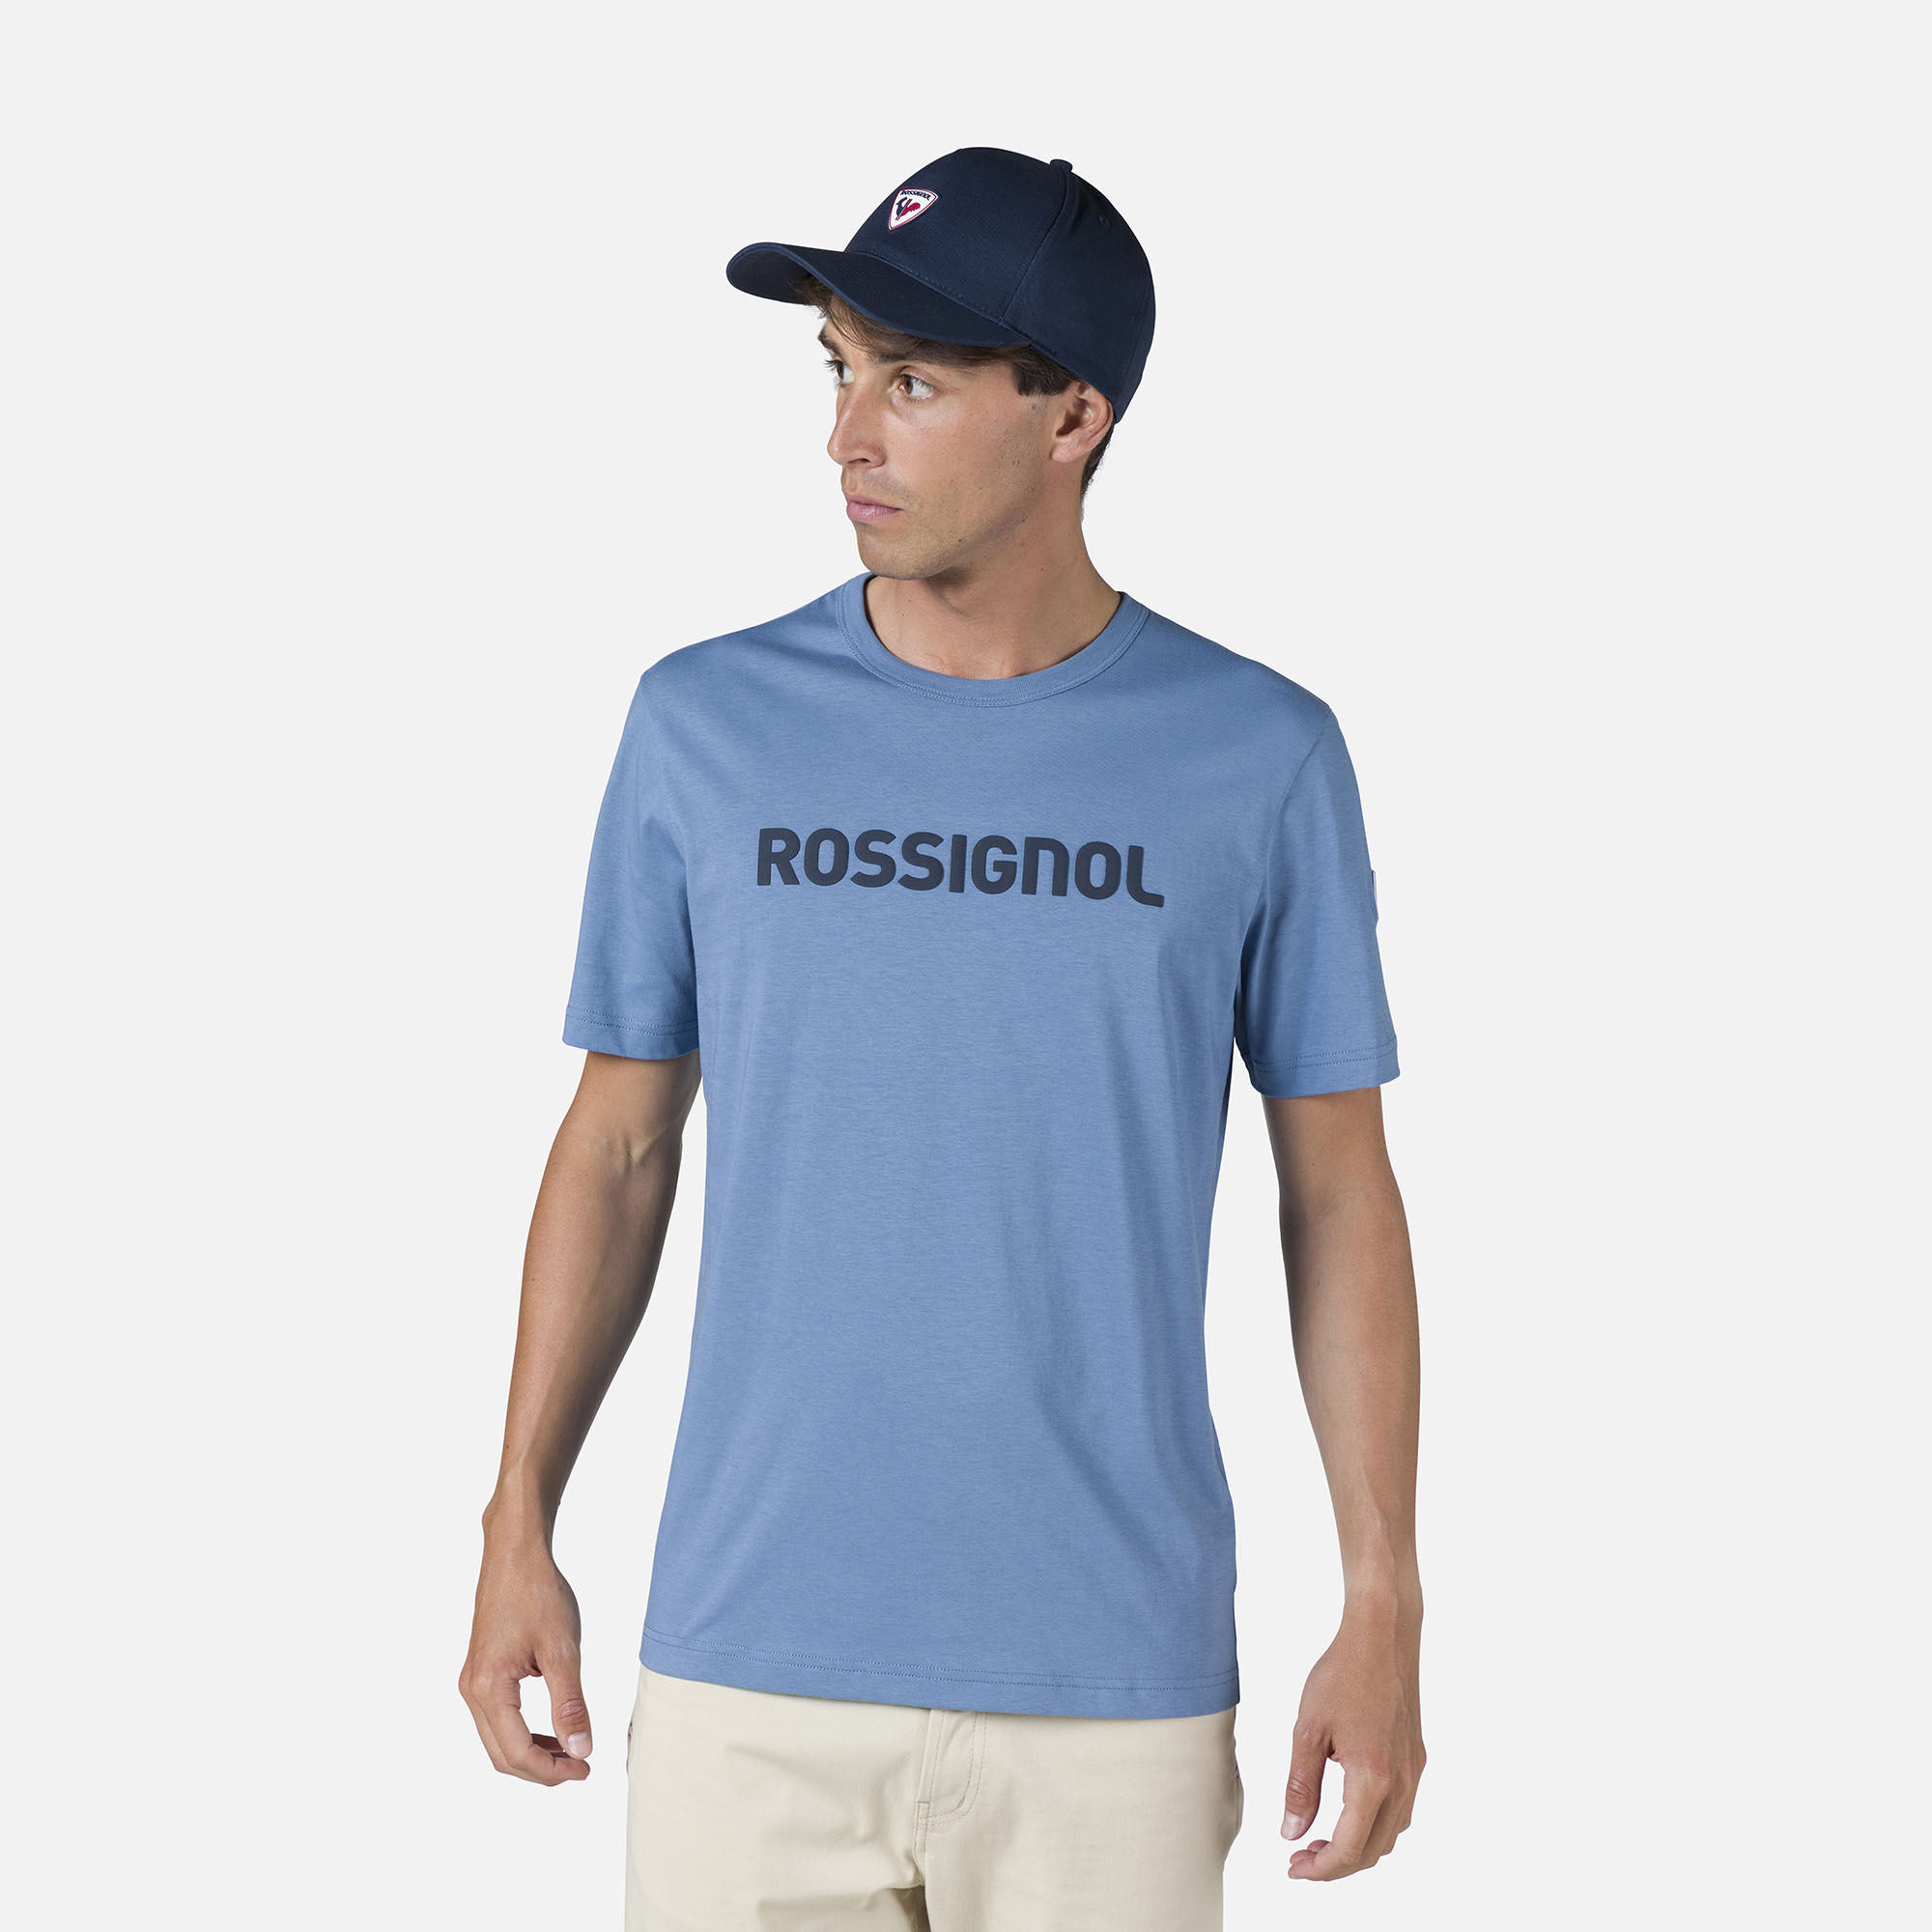 Camiseta Rossignol para hombre